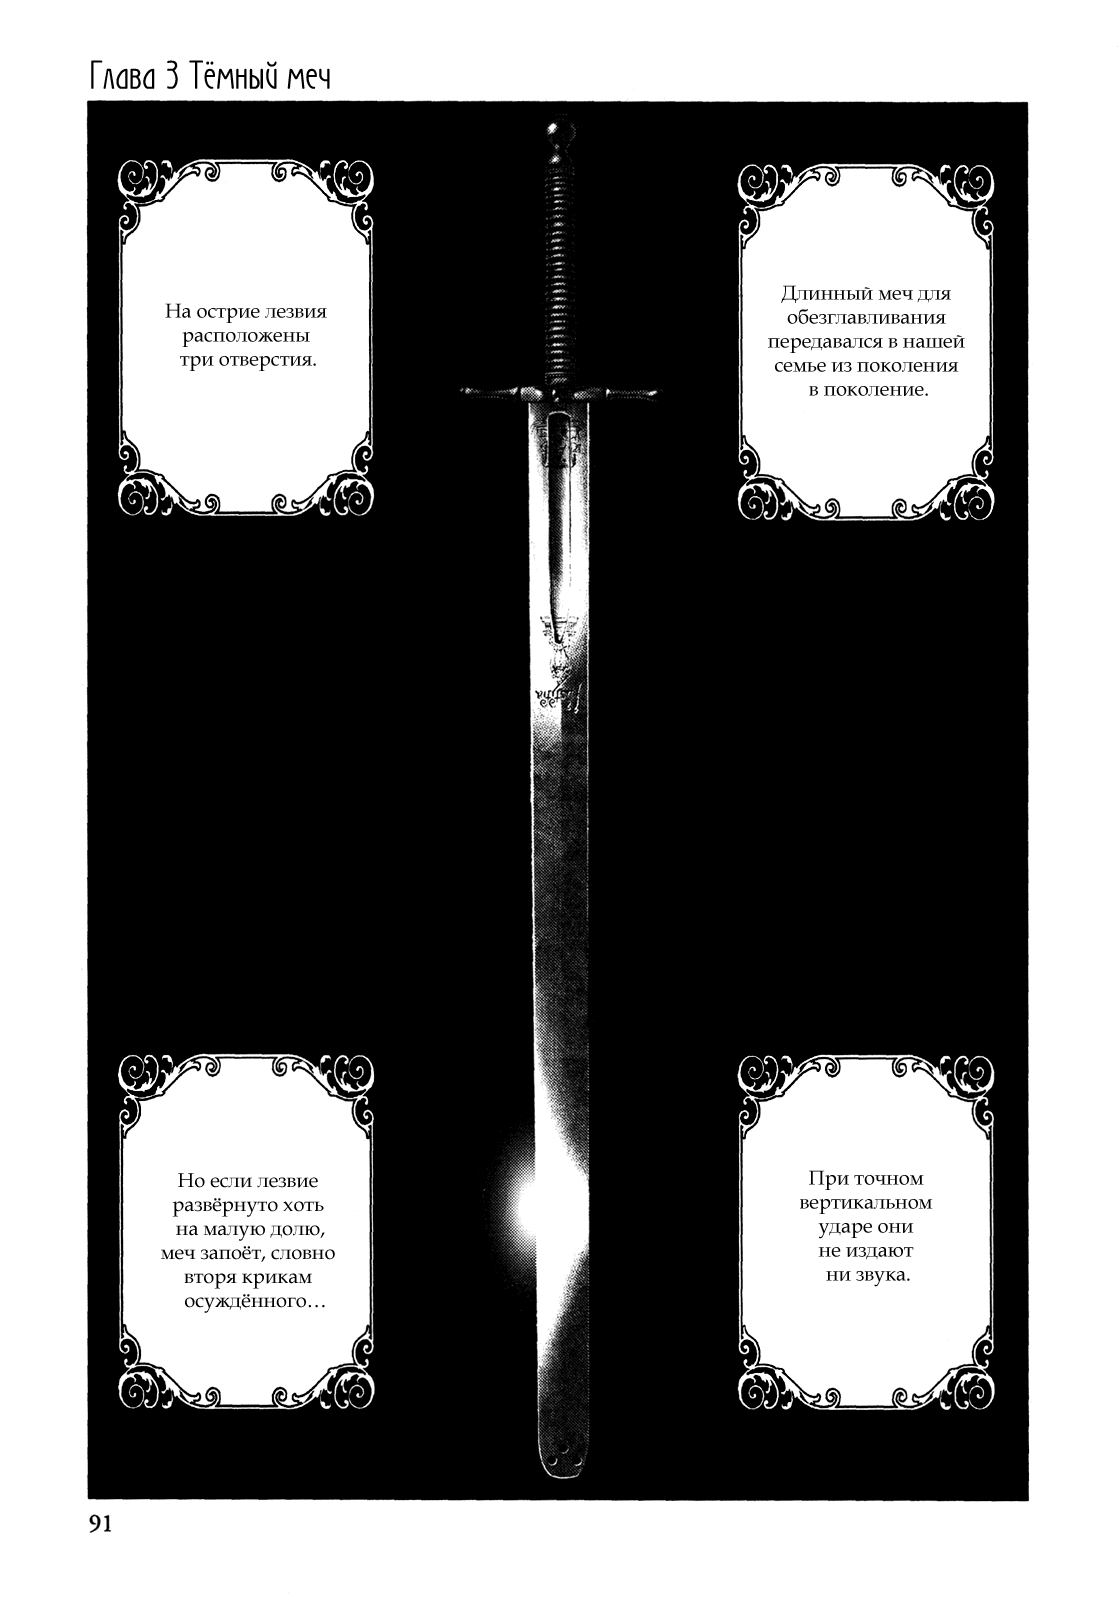 Невинный v1 - 3 Тёмный меч